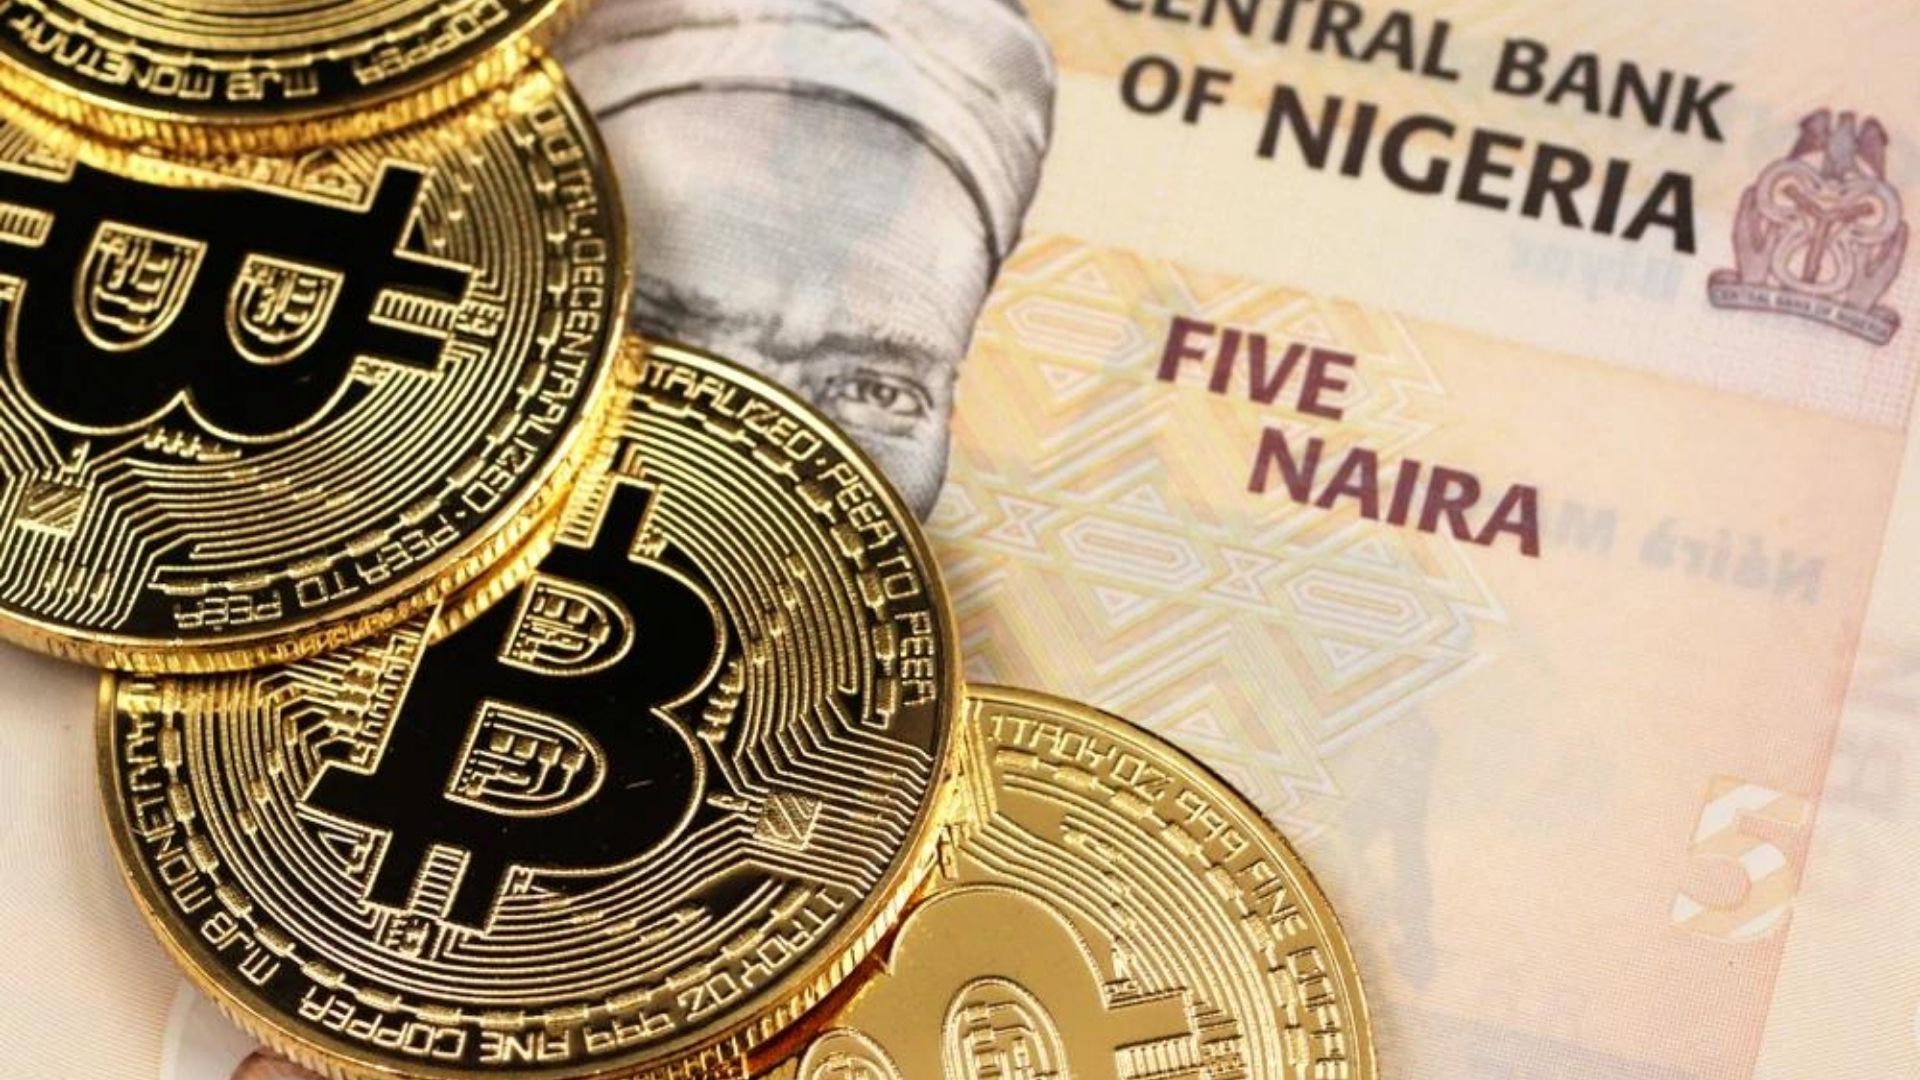 cum să faci bani prin bitcoin în Nigeria)